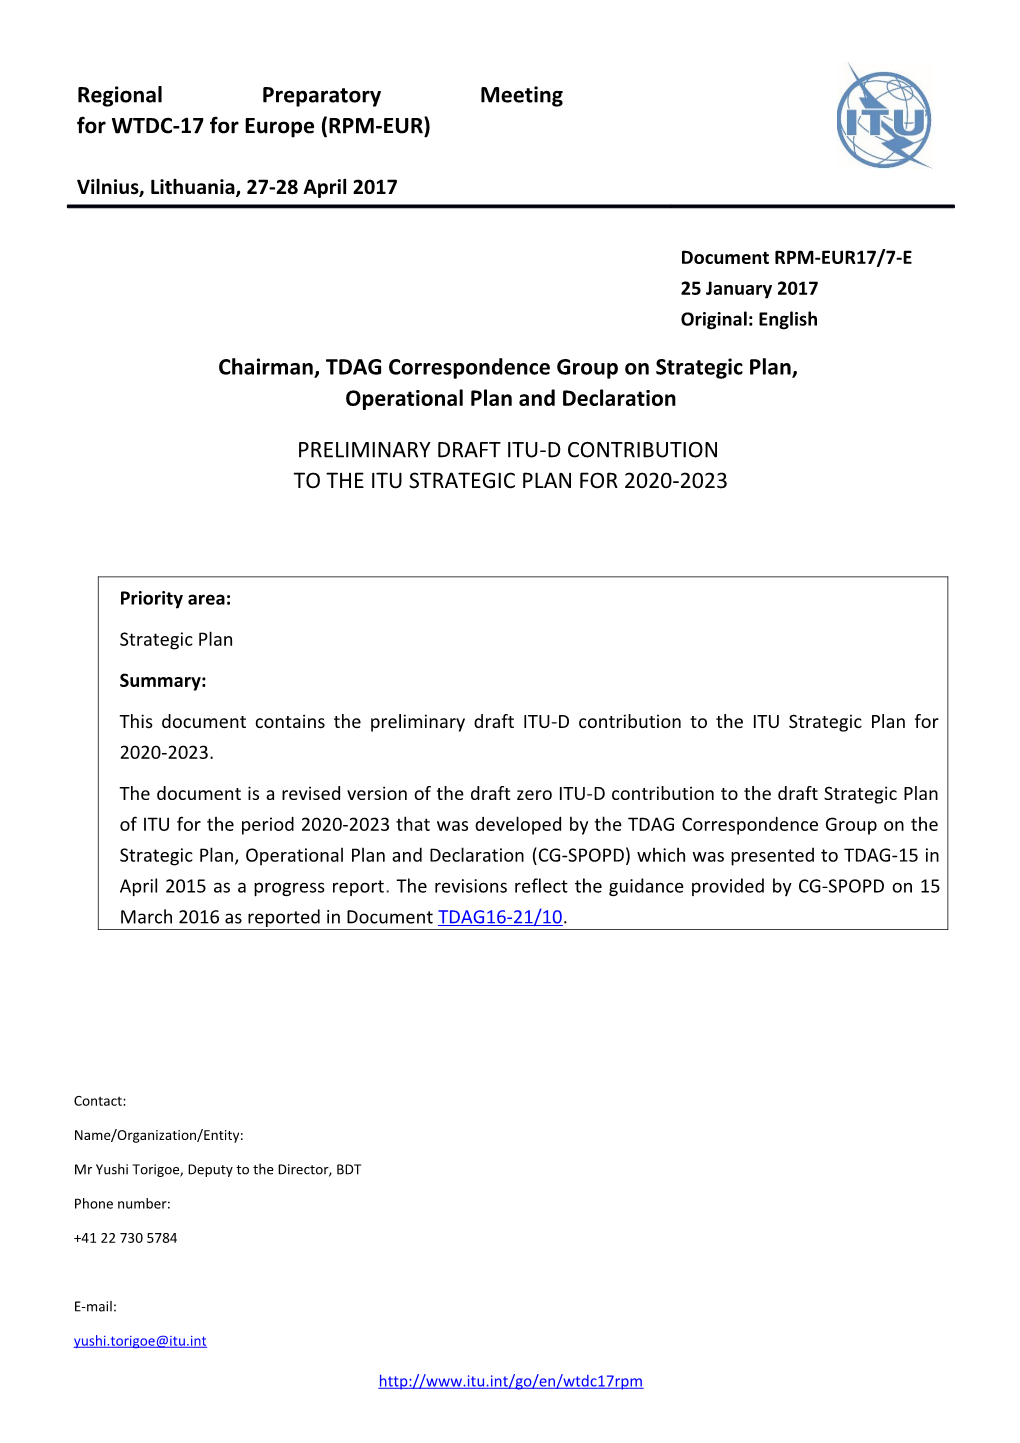 ITU-D/RPM-EUR17/7-Epage 1